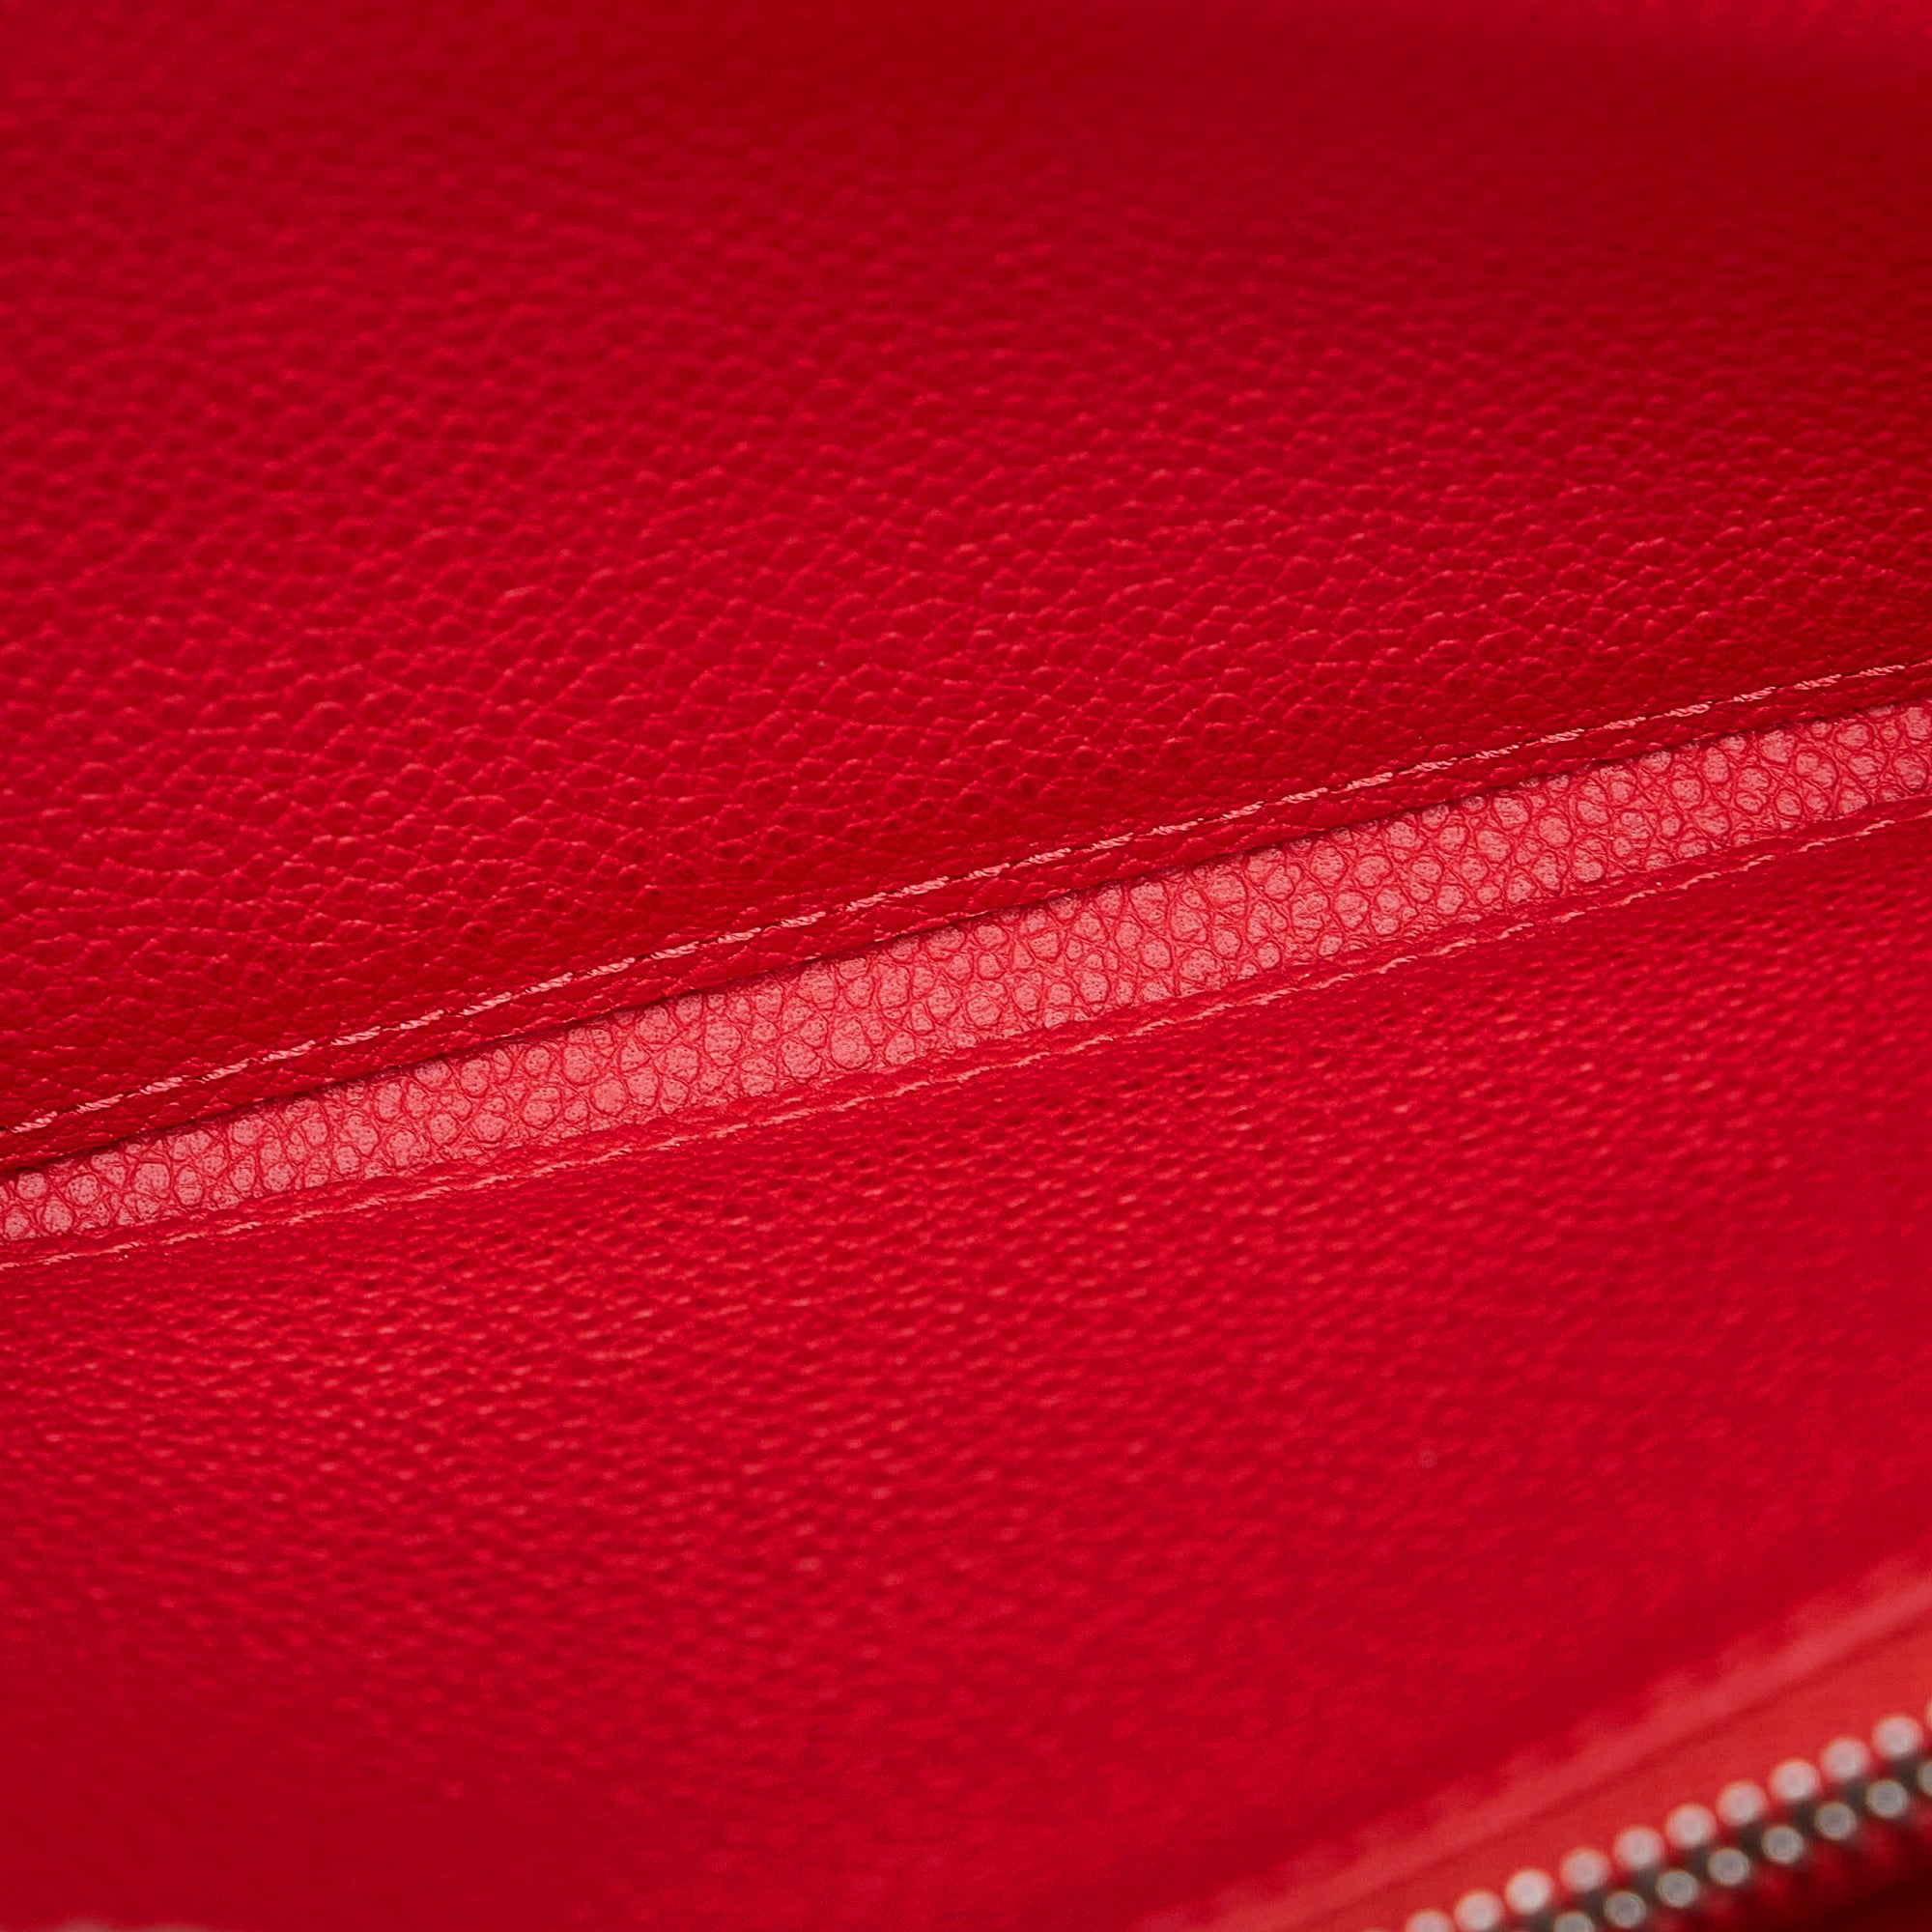 ❤️NEW LOUIS VUITTON Zip Coin Wallet Pouch Navy Red Empreinte Leather  Monogram